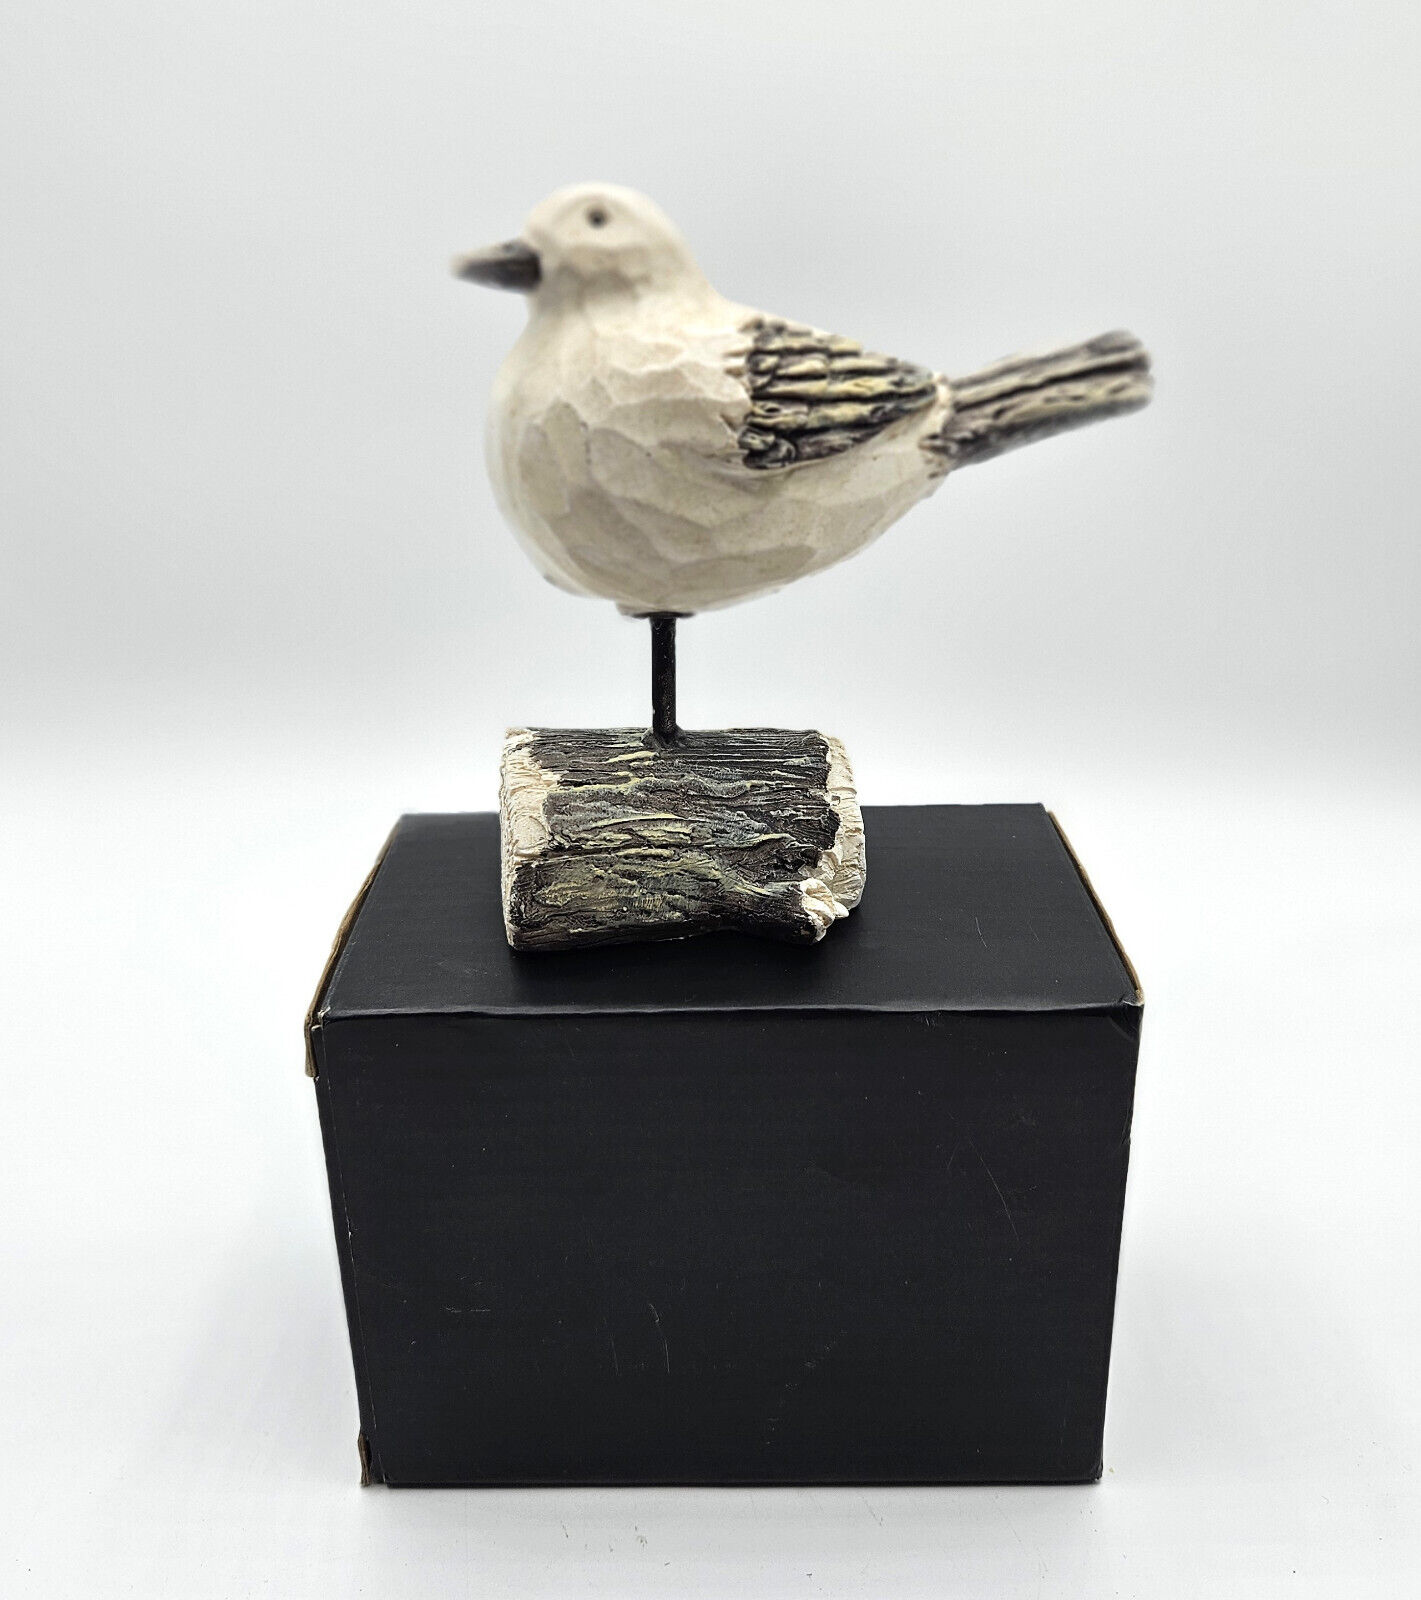 Seagull Bird Sculpture Perched on Driftwood